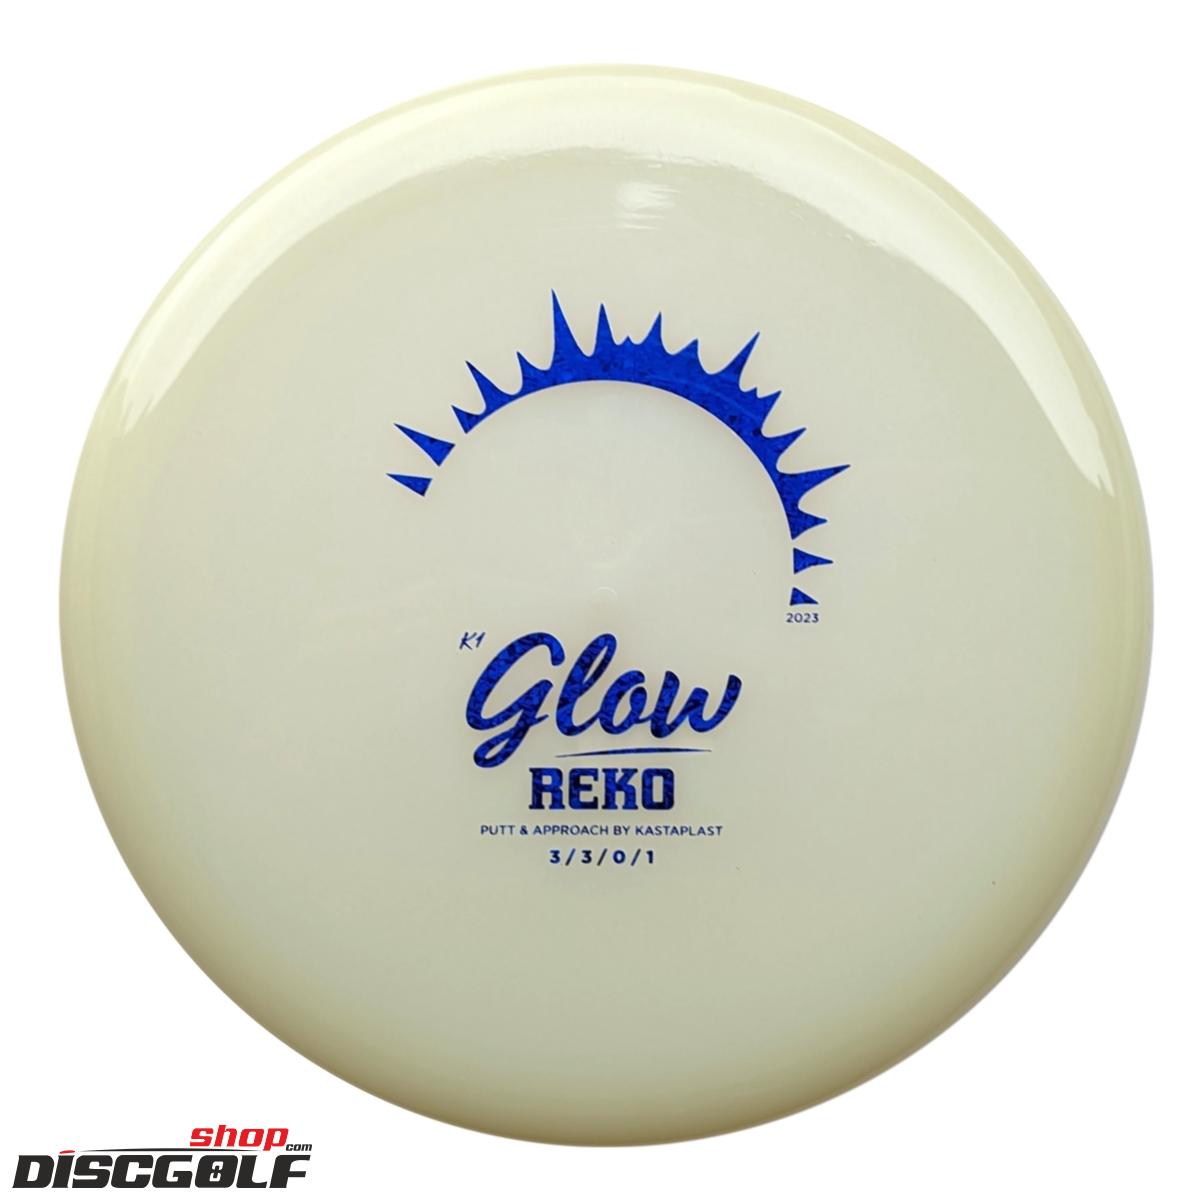 Kastaplast Reko K1 Glow 2023 (discgolf)